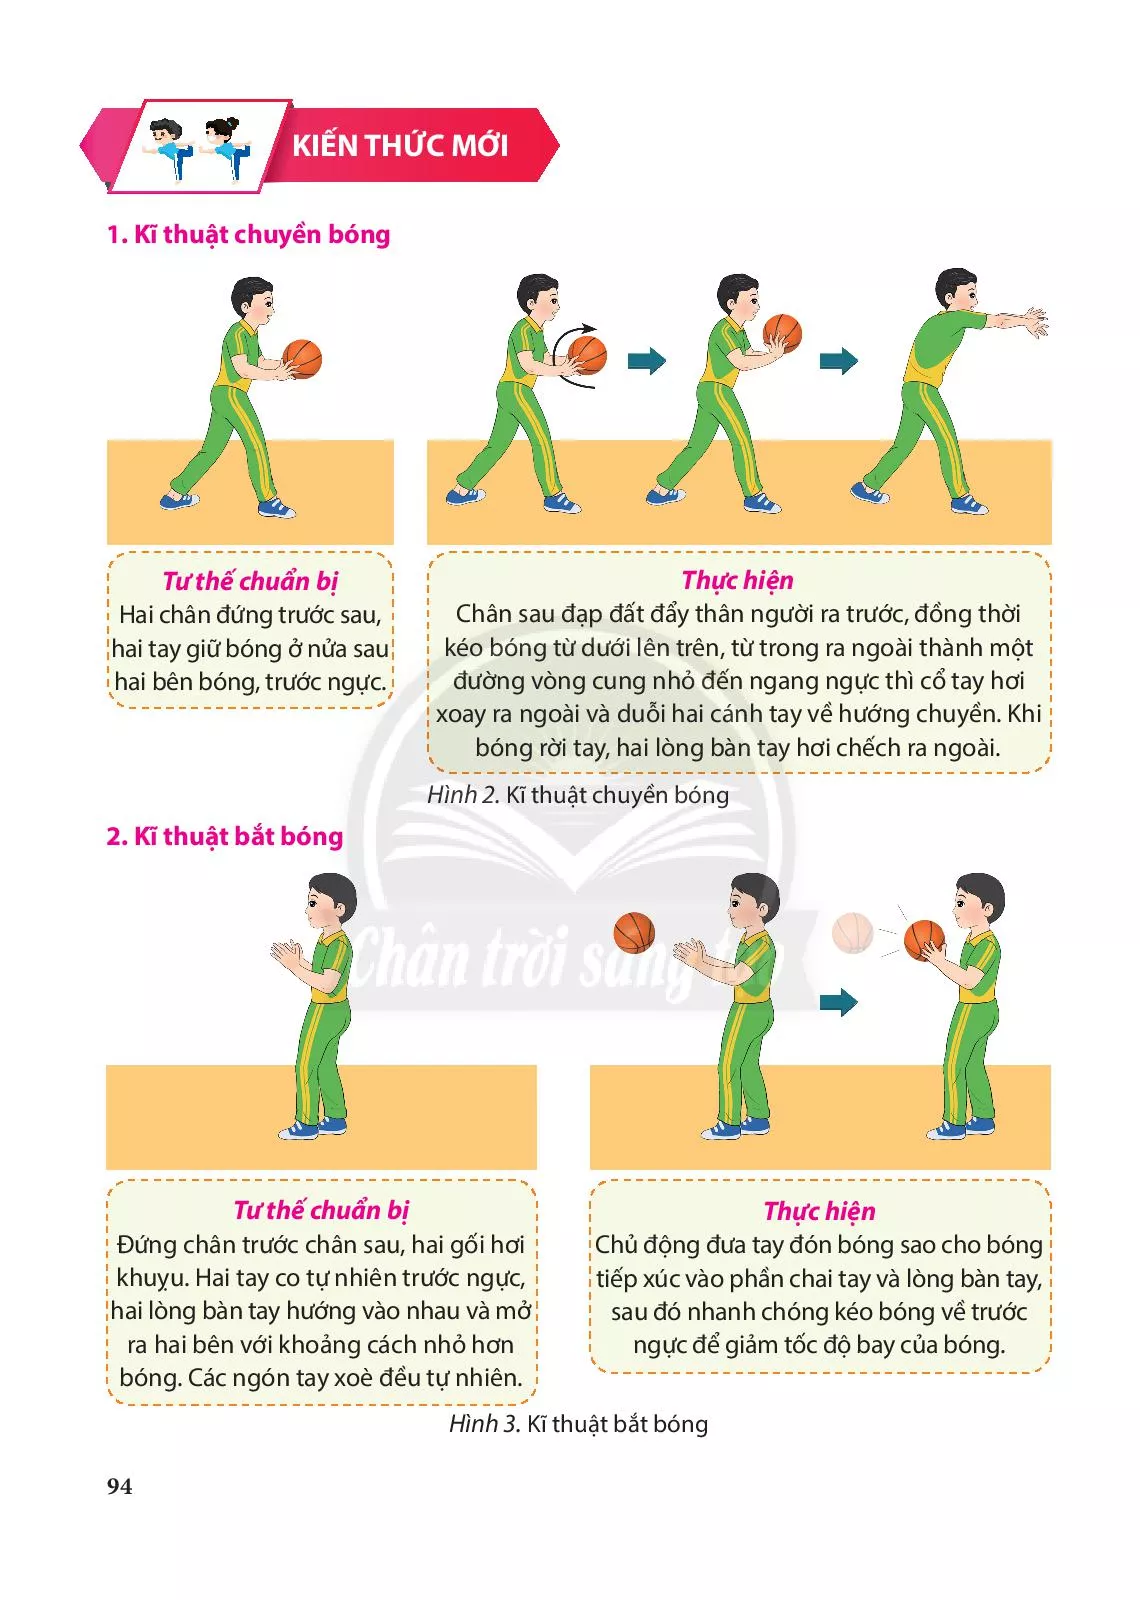 Bài 2. Kĩ thuật chuyền và bắt bóng